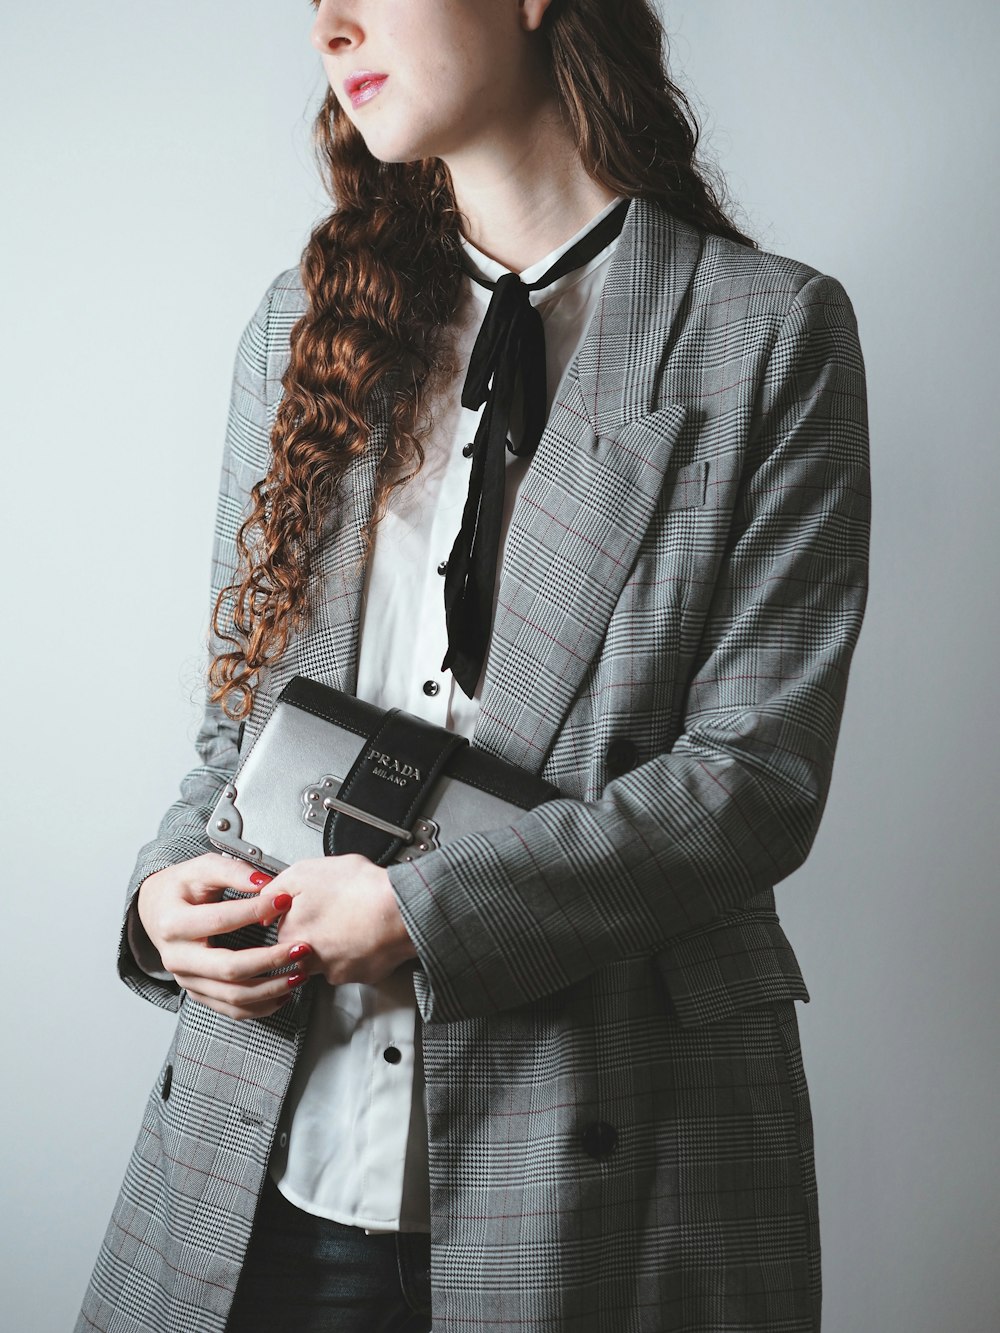 Foto de mujer con chaqueta a cuadros en blanco y negro sosteniendo un  iphone 6 plateado – Imagen gratuita Mundo financiero en Unsplash